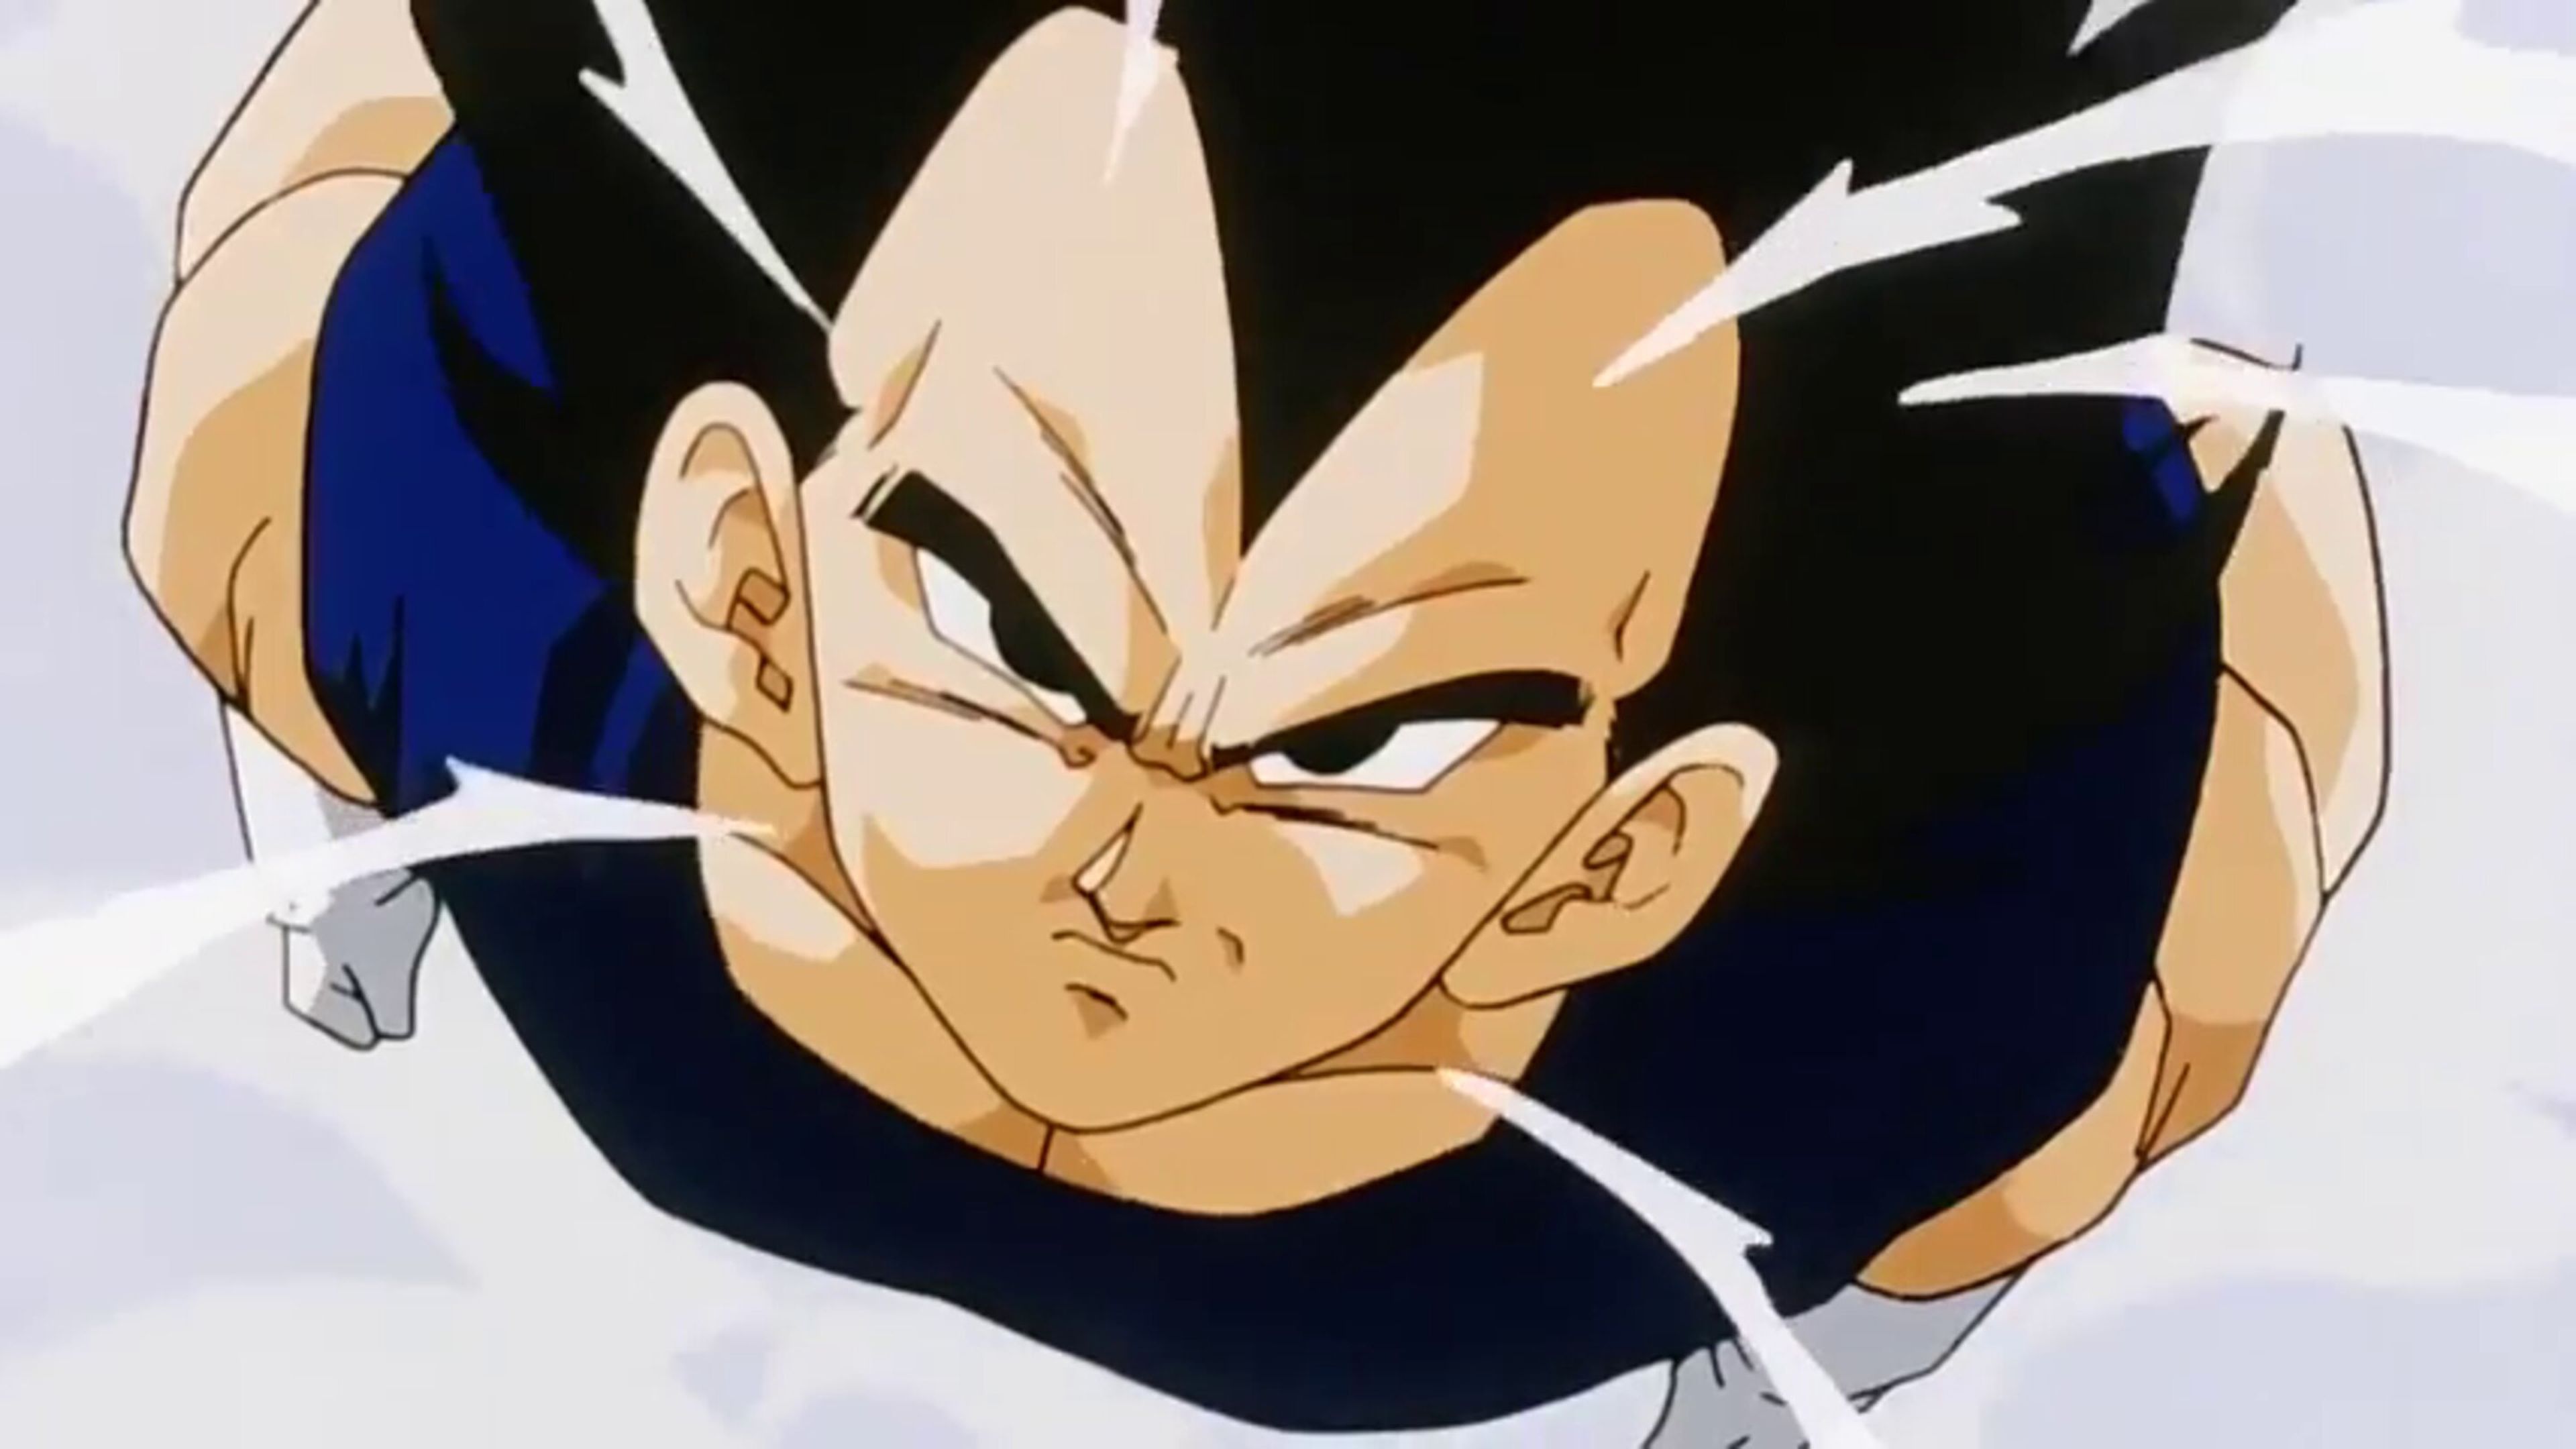 Dragon Ball - Vegeta se tragó su orgullo y usó el Kame Hame Ha de Goku para derrotar a un poderoso villano en esta historia oficial